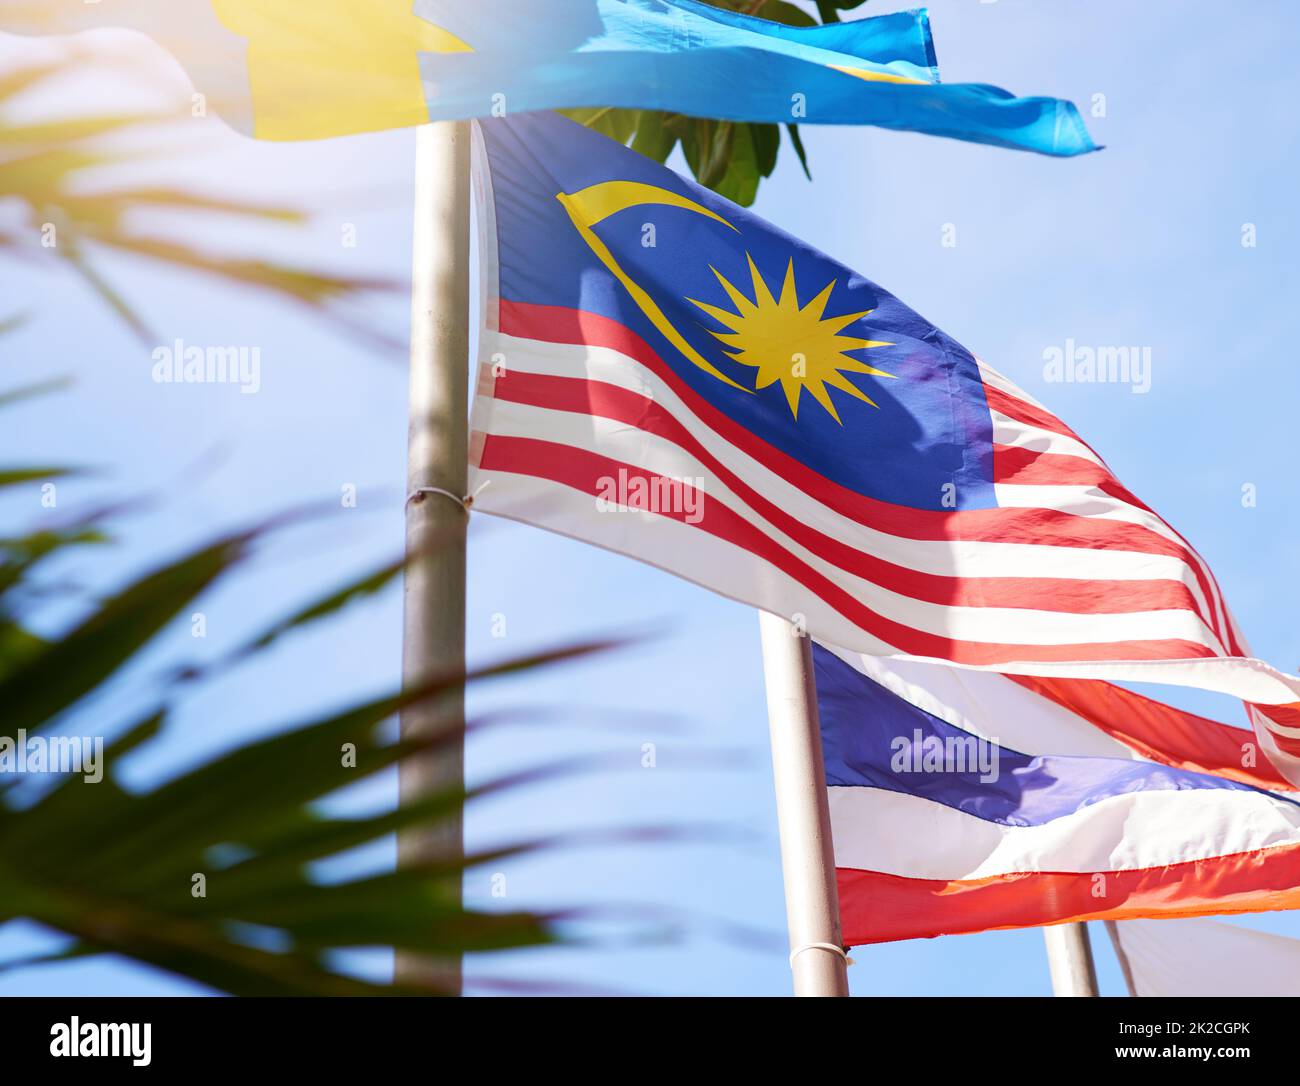 Envolez-vous haut, envolez-vous avec fierté. Photo d'un drapeau malaisien et thaïlandais soufflant dans le vent. Banque D'Images